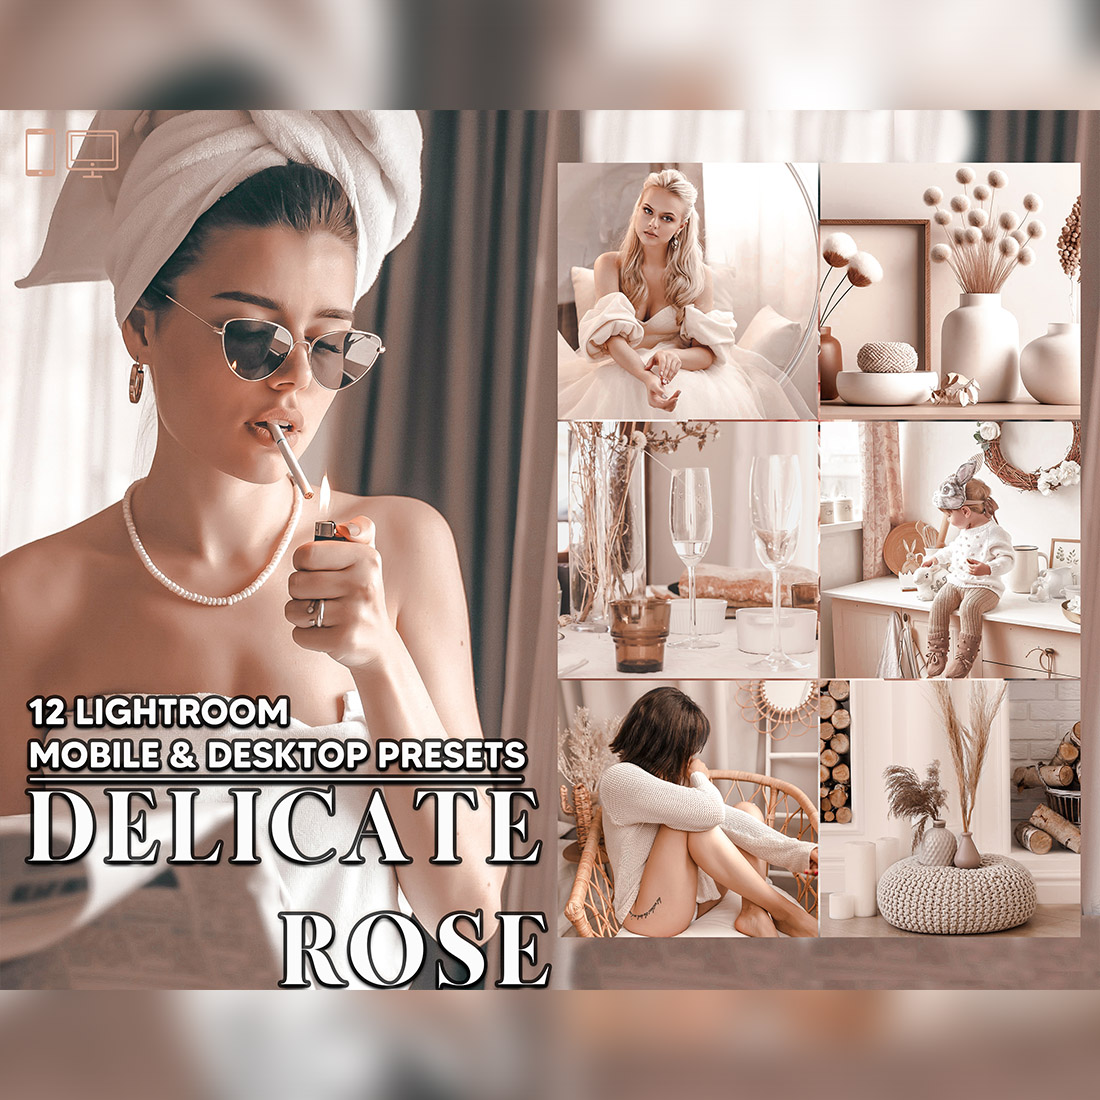 12 Delicate Rose Lightroom Presets, Minimal Mobile Preset, Neutral Pink Desktop LR Filter Lifestyle Theme For Blogger Portrait Instagram cover image.